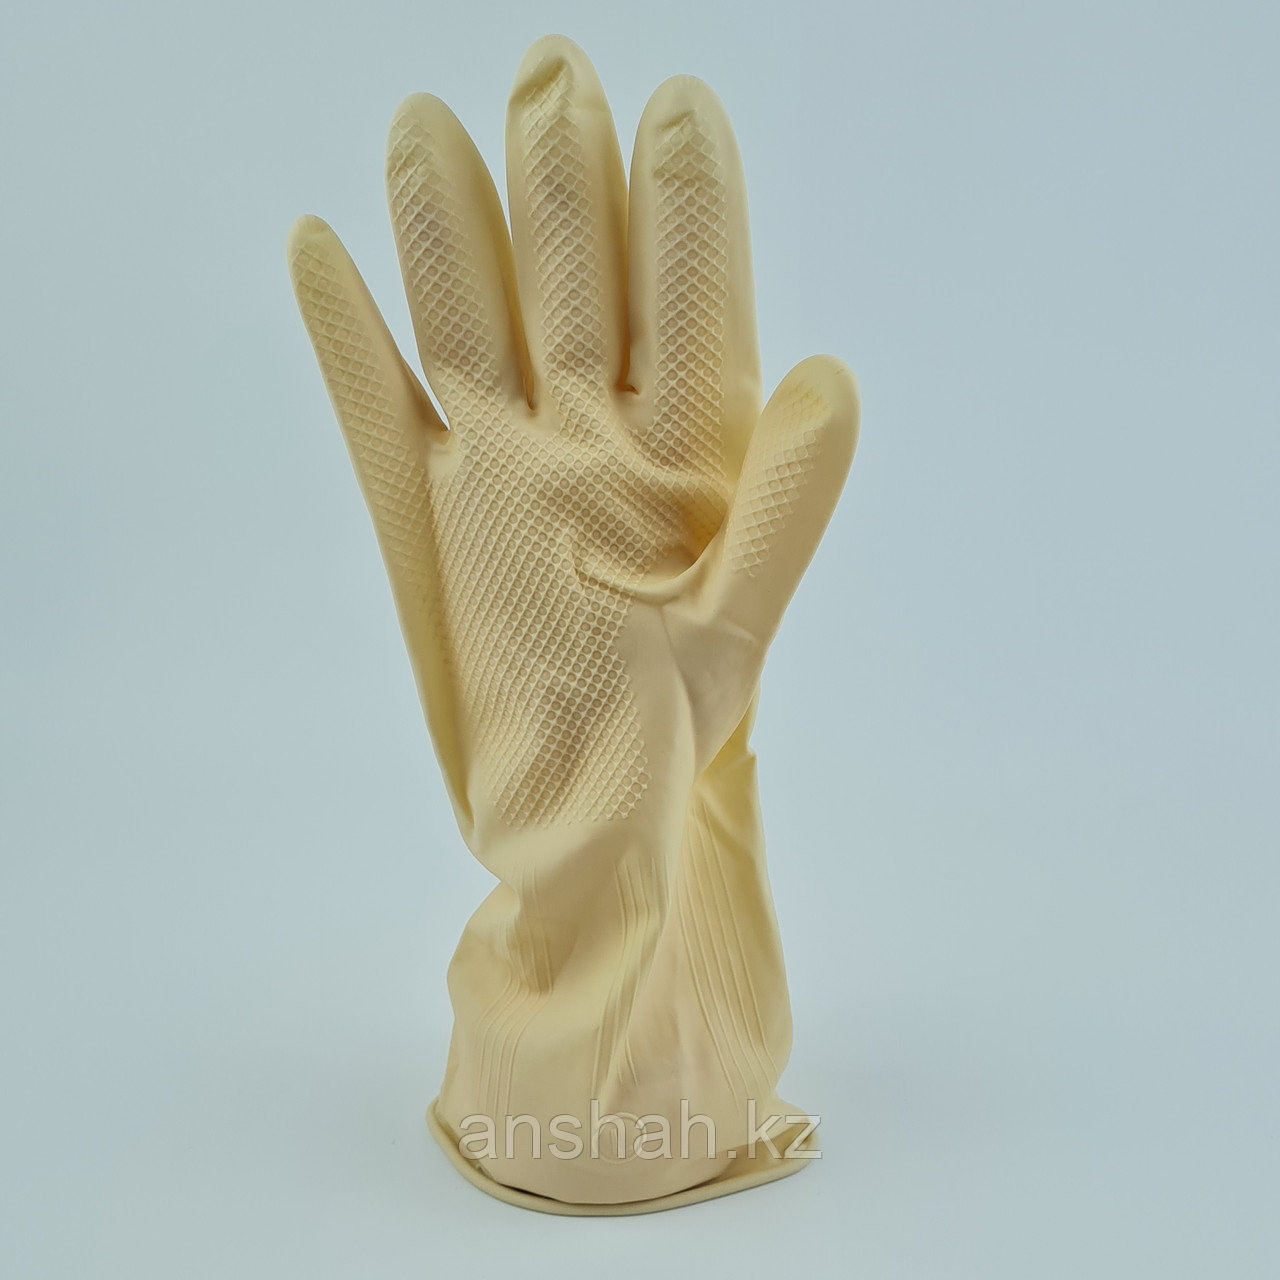 Резиновые перчатки "Пальма", оригинал, размер L, М